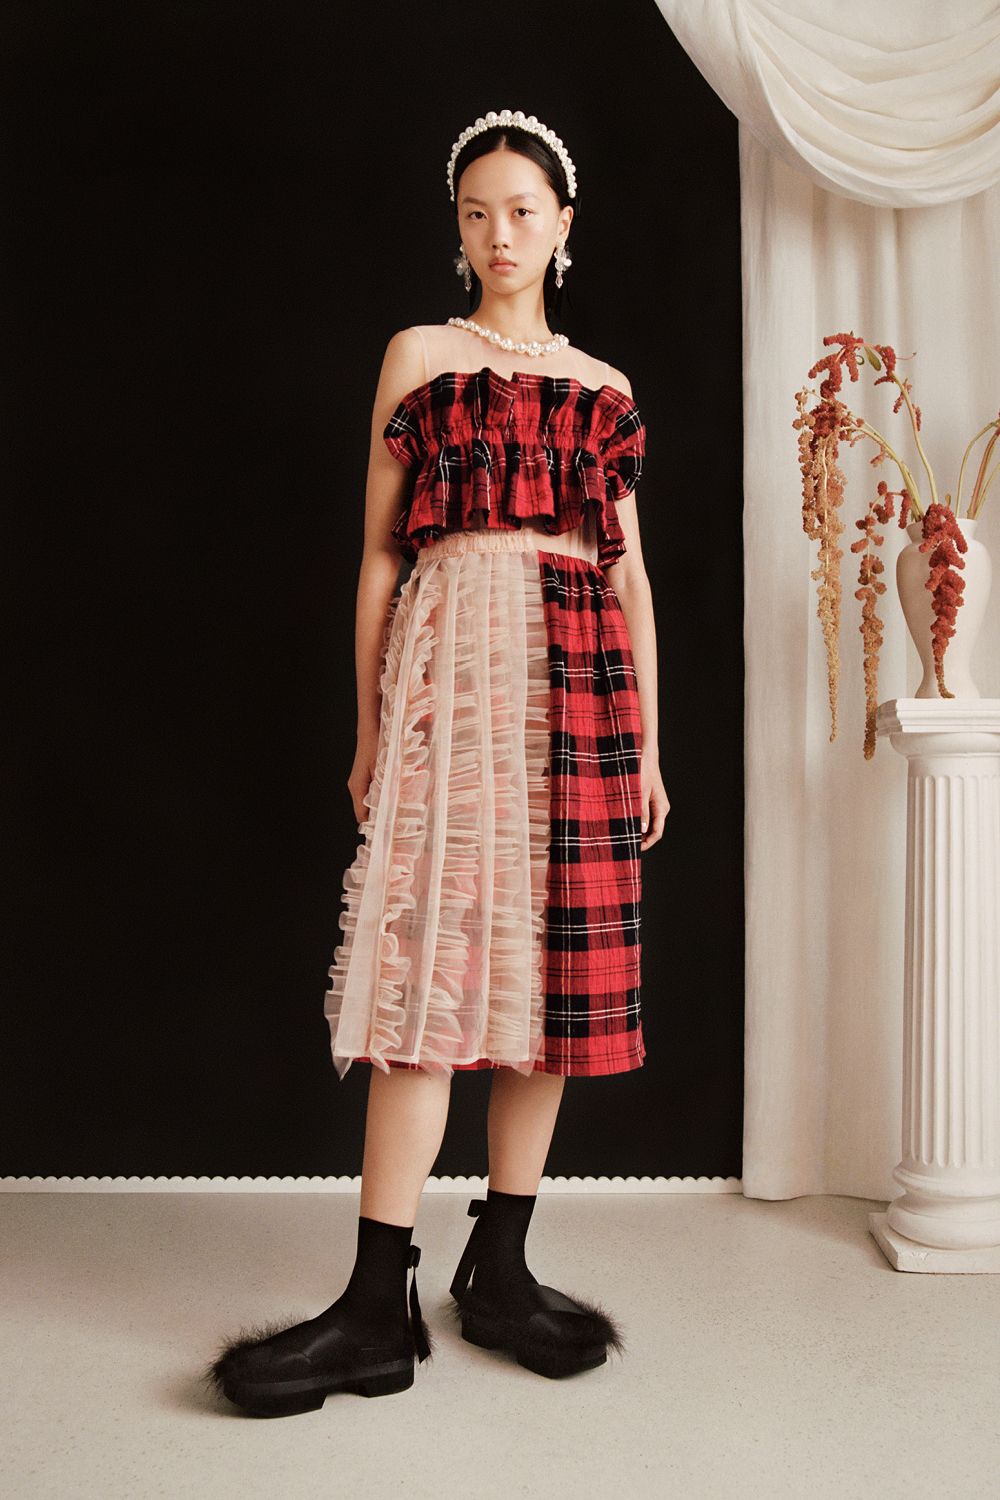 シモーネ ロシャ H M コラボコレクションの全ルックを公開 ファッション Elle エル デジタル